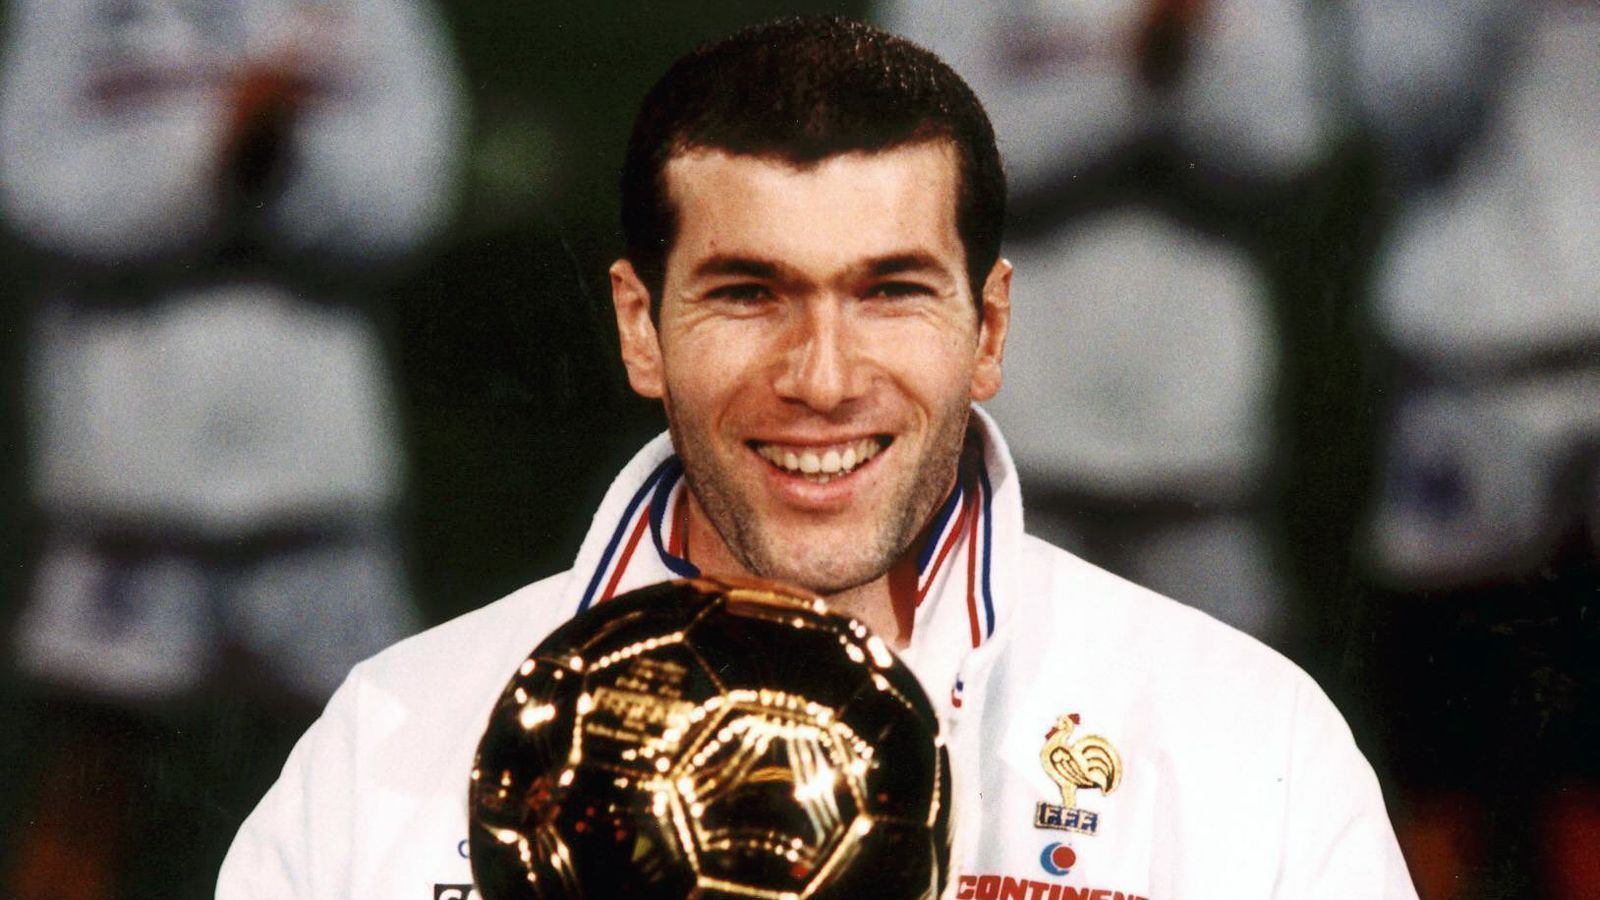 
                <strong>Zinedine Zidane (1998)</strong><br>
                Im Vorjahr noch auf Platz 3, schnappte sich der Franzose Zinedine Zidane 1998 als frischgebackener Weltmeister den Ballon d'Or. Zu diesem Zeitpunkt glänzte der Nationalspieler auf Klubebene für Juventus Turin und verwies bei der Weltfußballer-Wahl Luis Figo und Rivaldo auf die Plätze 2 bzw. 3. 
              